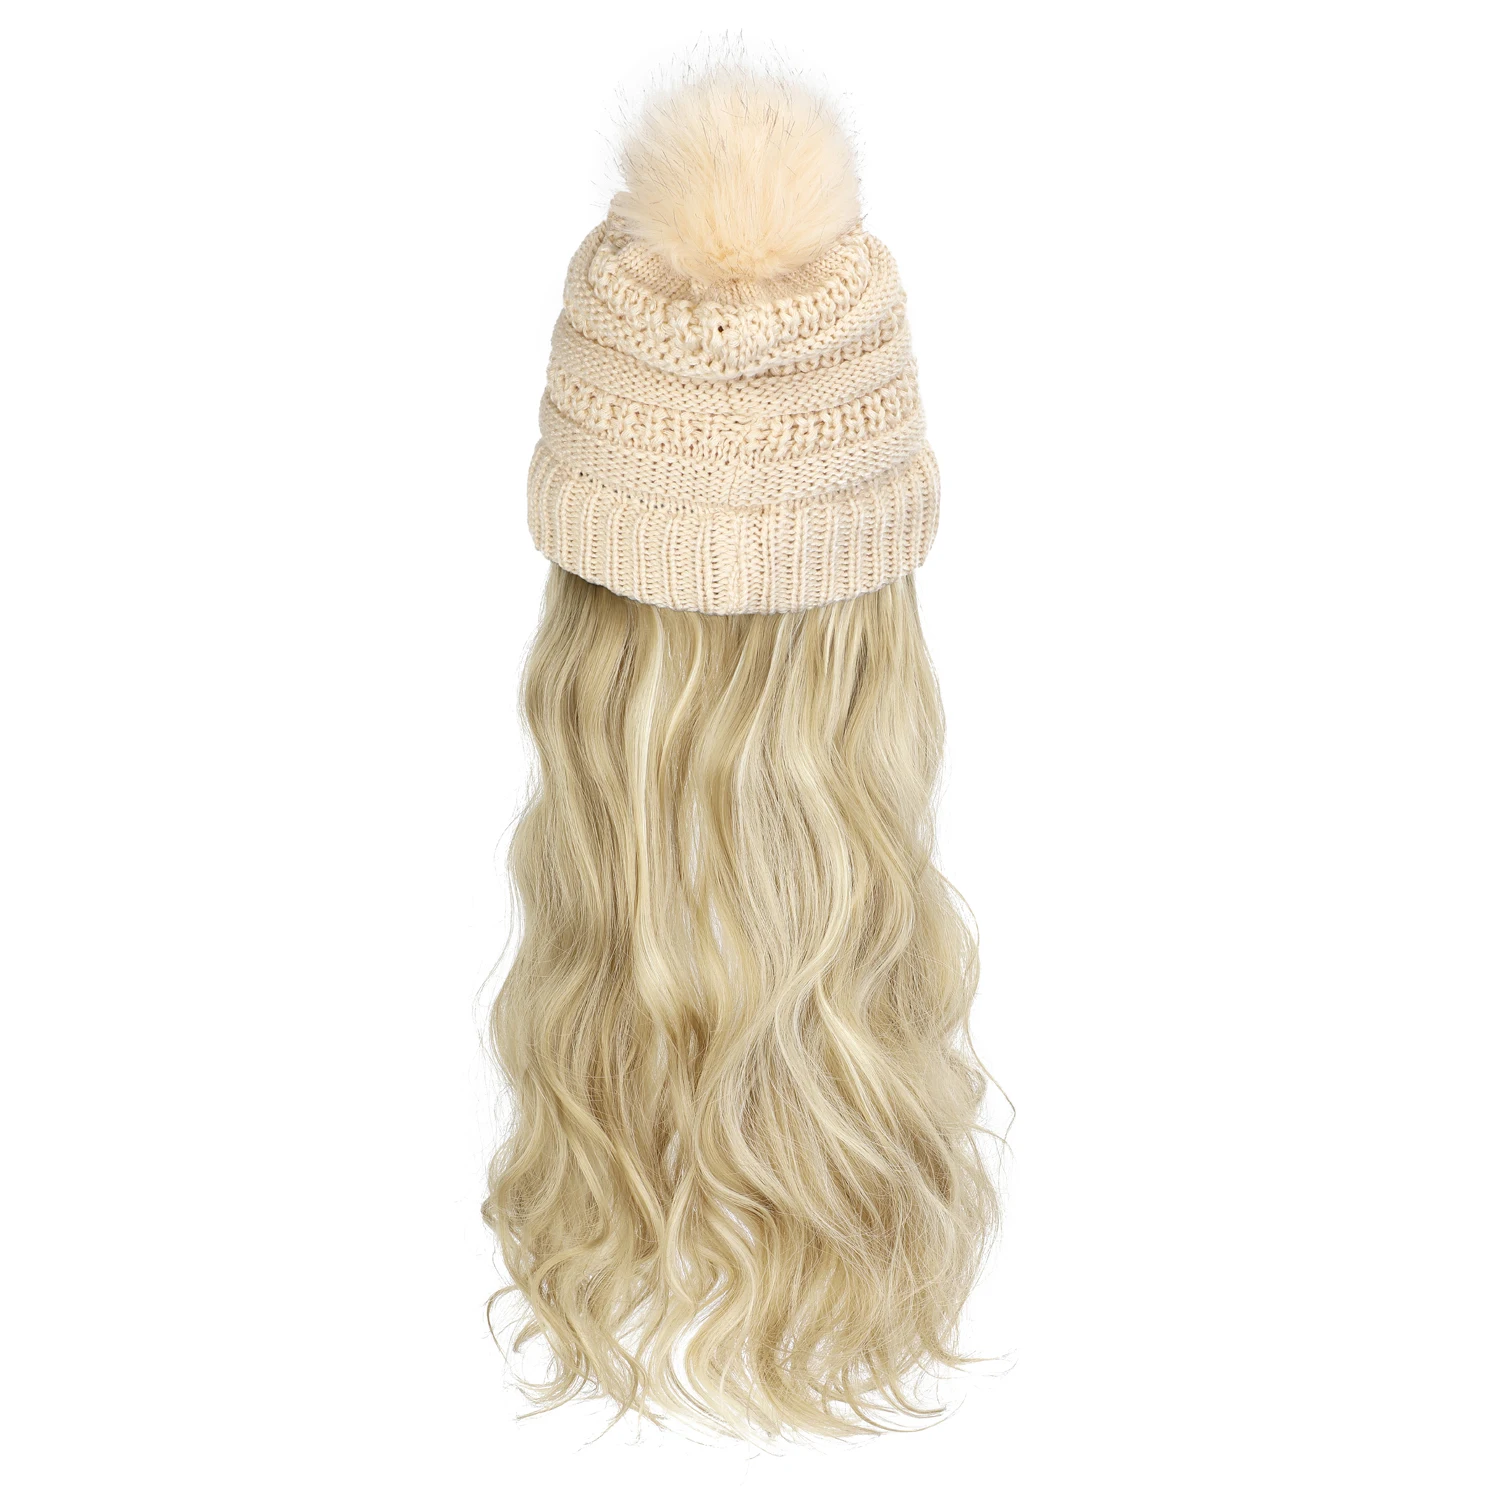 shangzi chapéu peruca sintética longo ondulado perucas branco mais veludo boina chapéu de malha moda preto outono inverno boné peruca de cabelo extensões